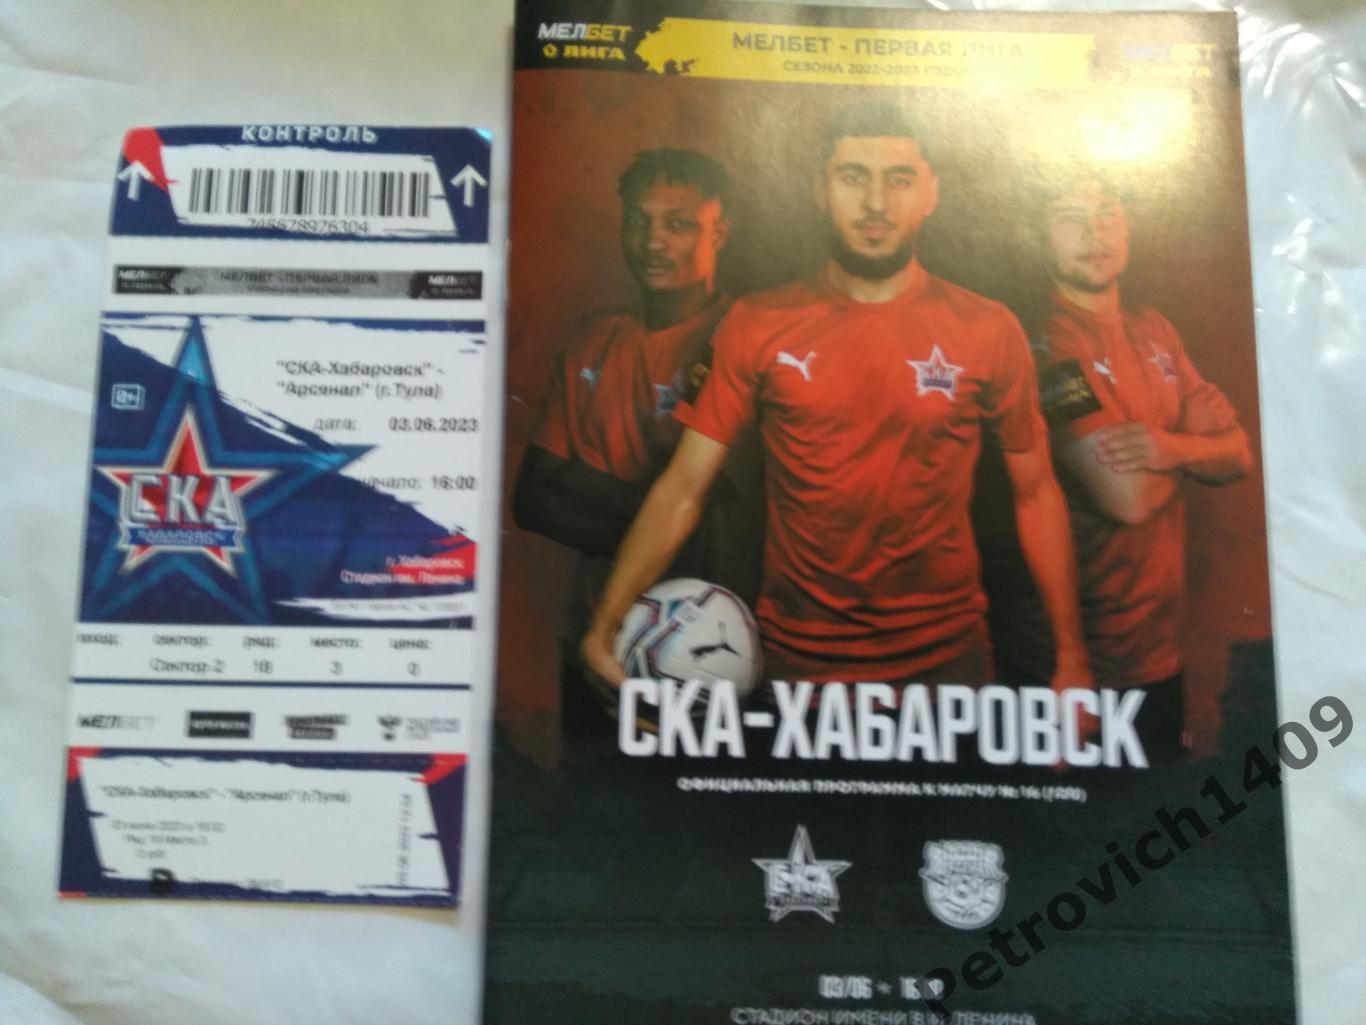 СКА Хабаровск - Арсенал Тула 03.06.2023 . Программа+билет